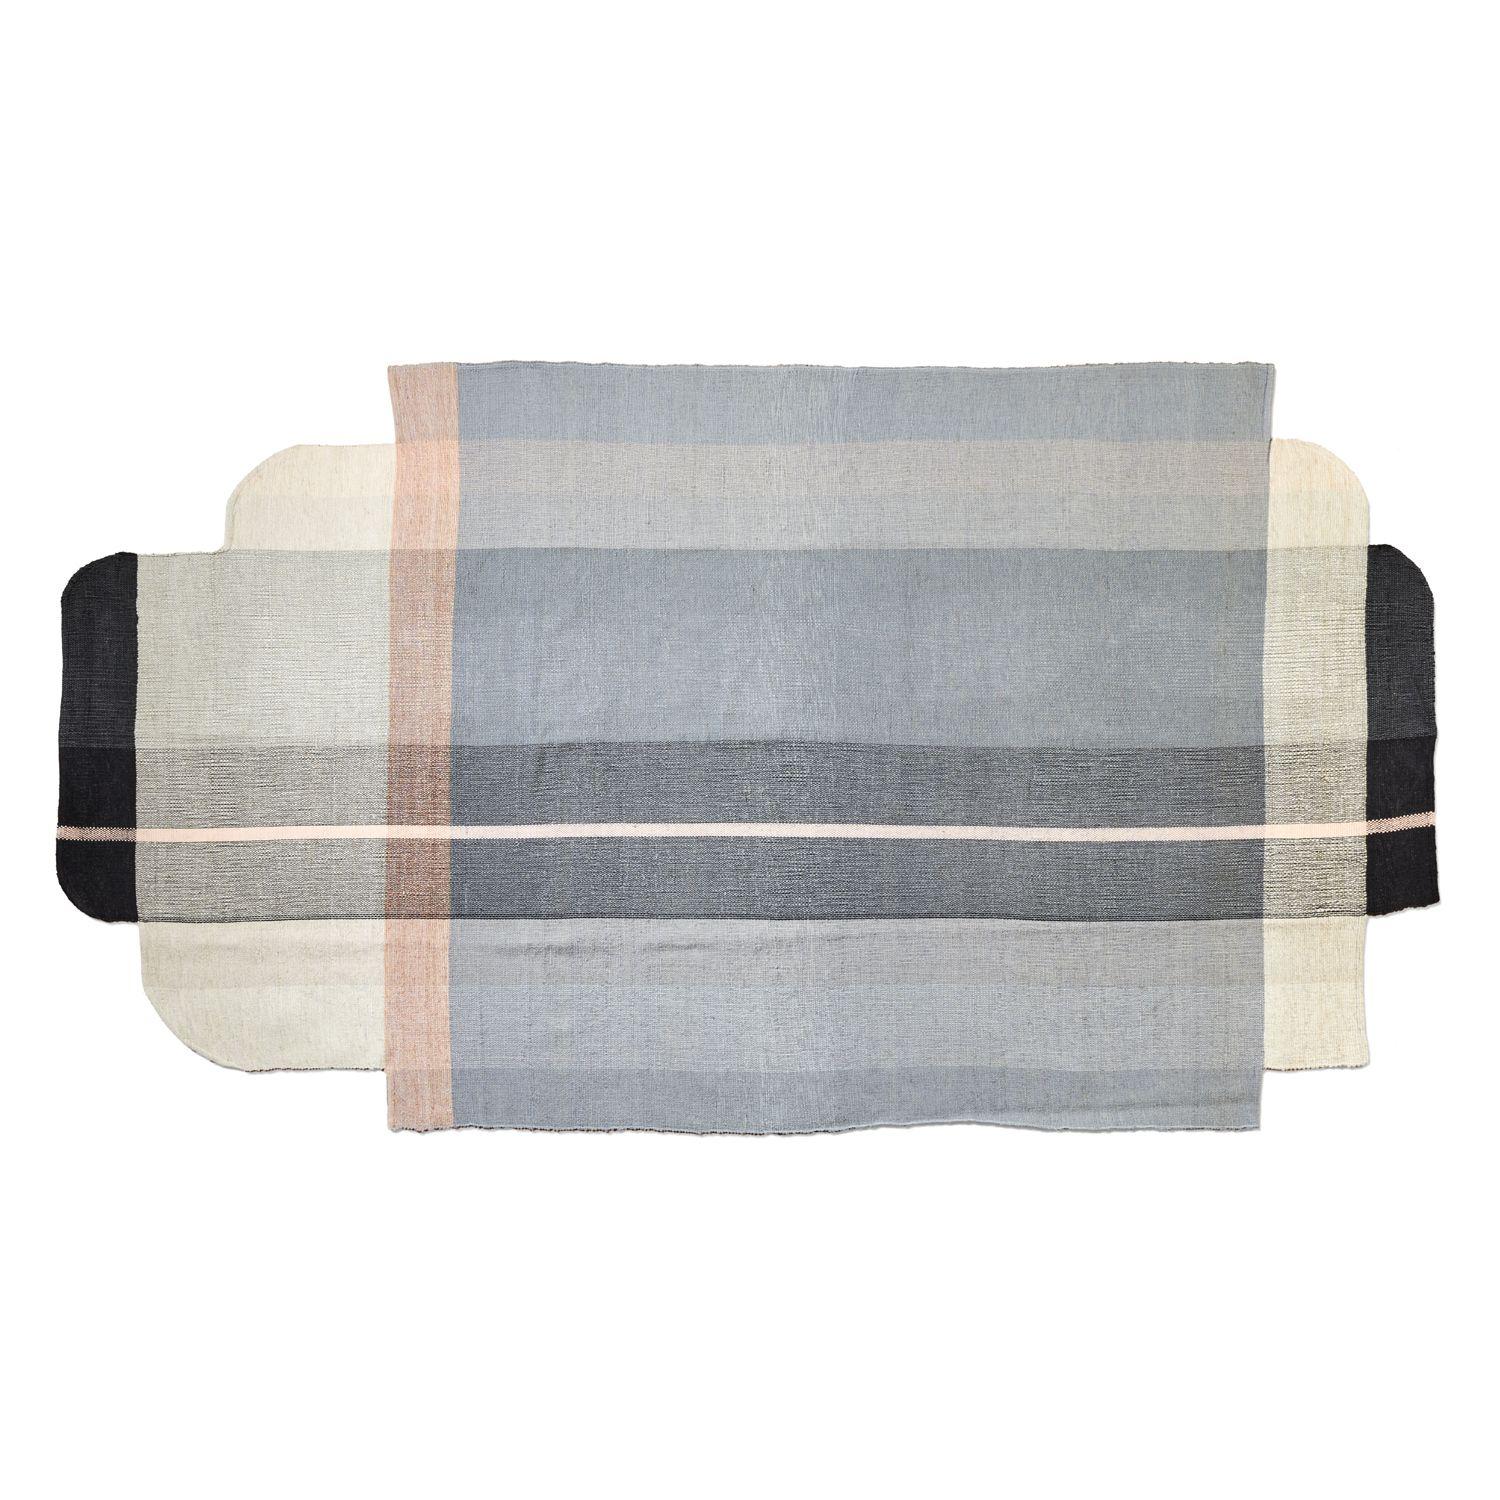 Großer Muyska-Teppich von Mae Engelgeer
MATERIALIEN: 100% natürliche Schurwolle
Technik: Handgewebt in Kolumbien.
Abmessungen: B 190 x L 365 cm 
Erhältlich in den Farben: grau/beige/schwarz, grau/violett/hellblau, hellblau/grau/dunkelblau. Auch in